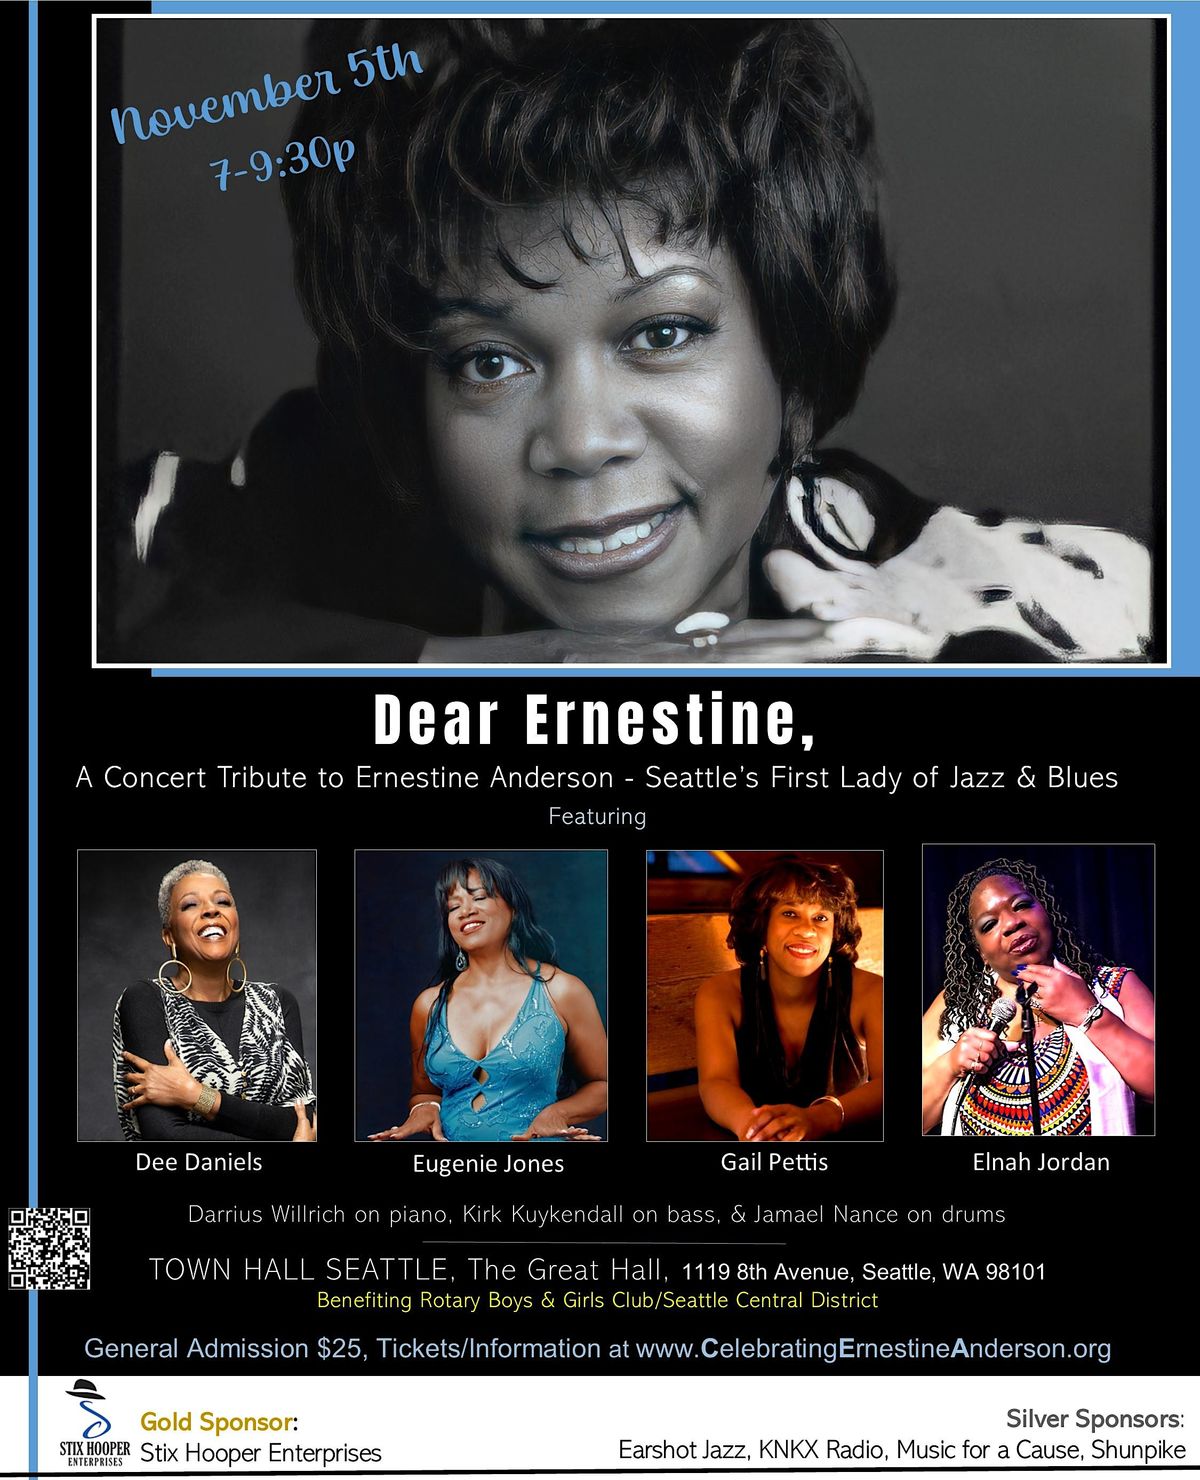 Dear Ernestine,   A Musical Tribute